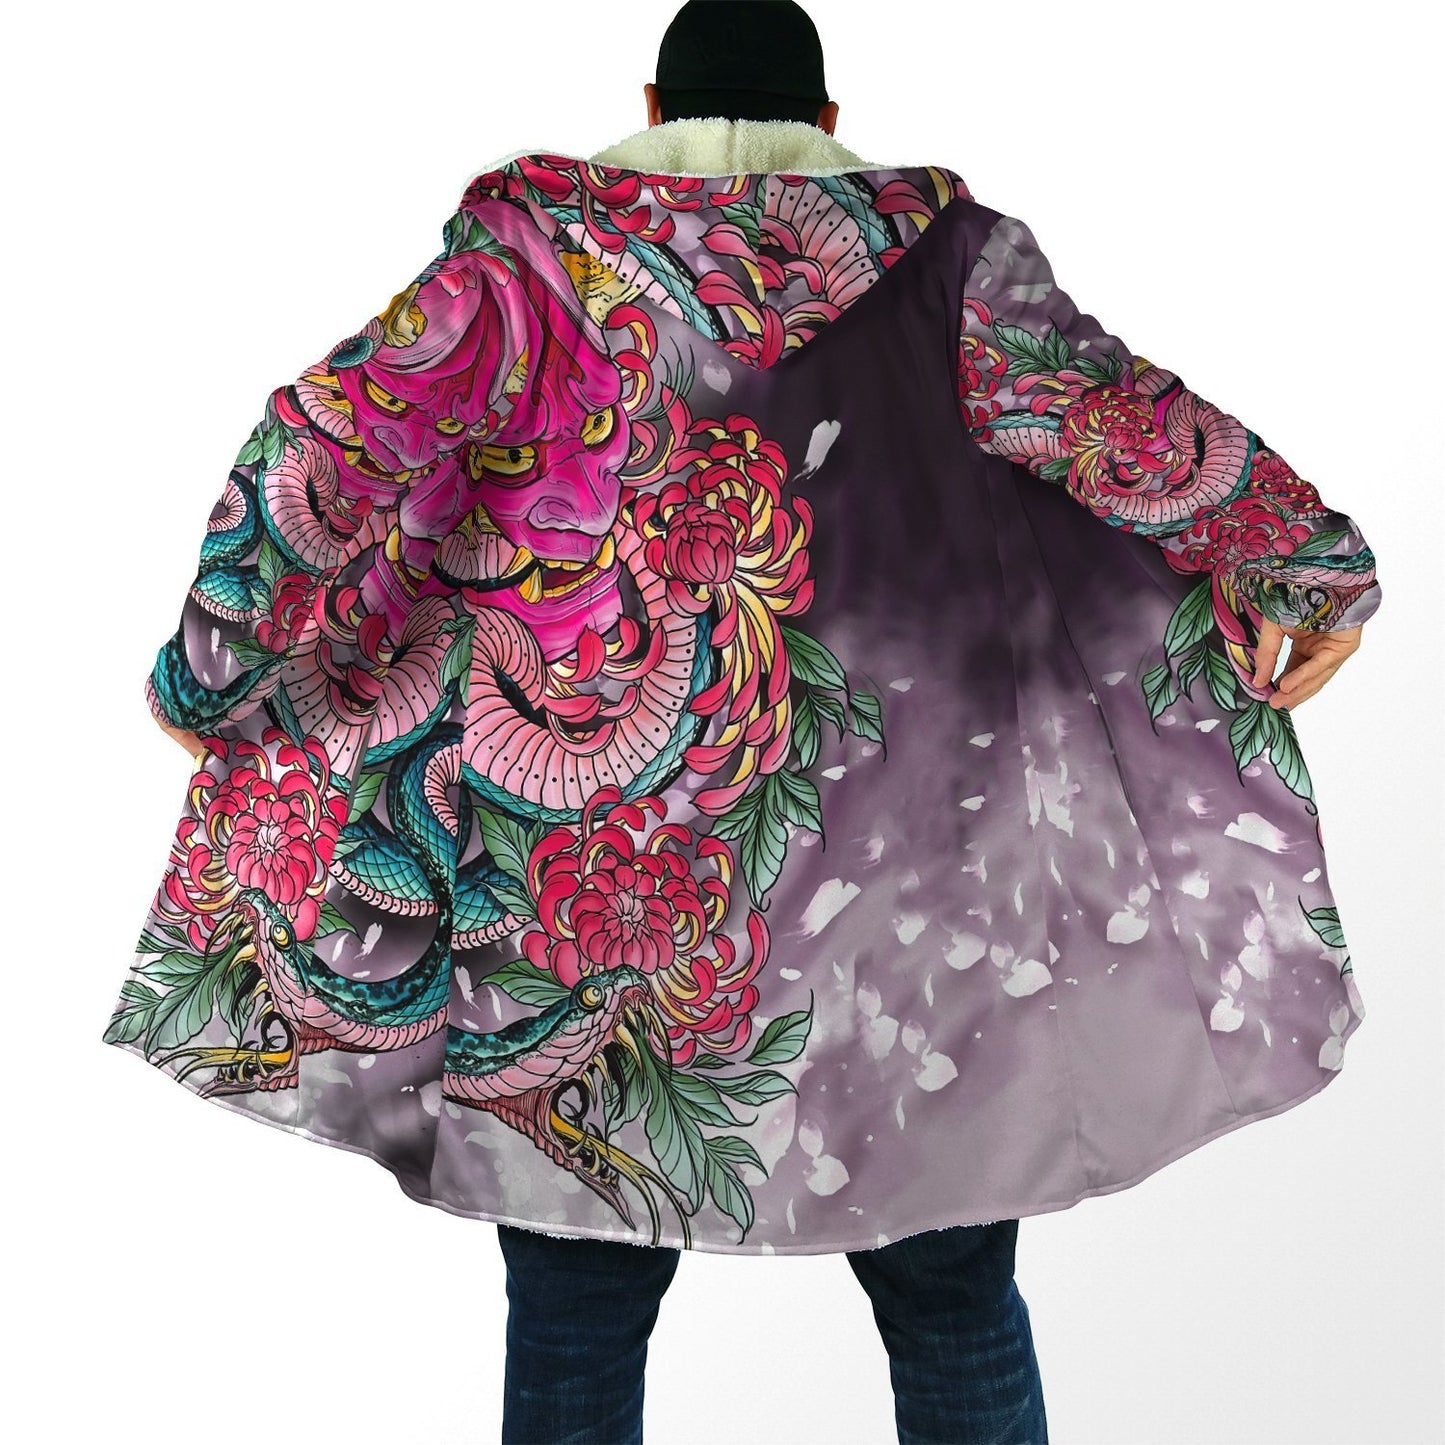 Irezumi Hooded Oni Samurai Cloak - Multiple Designs